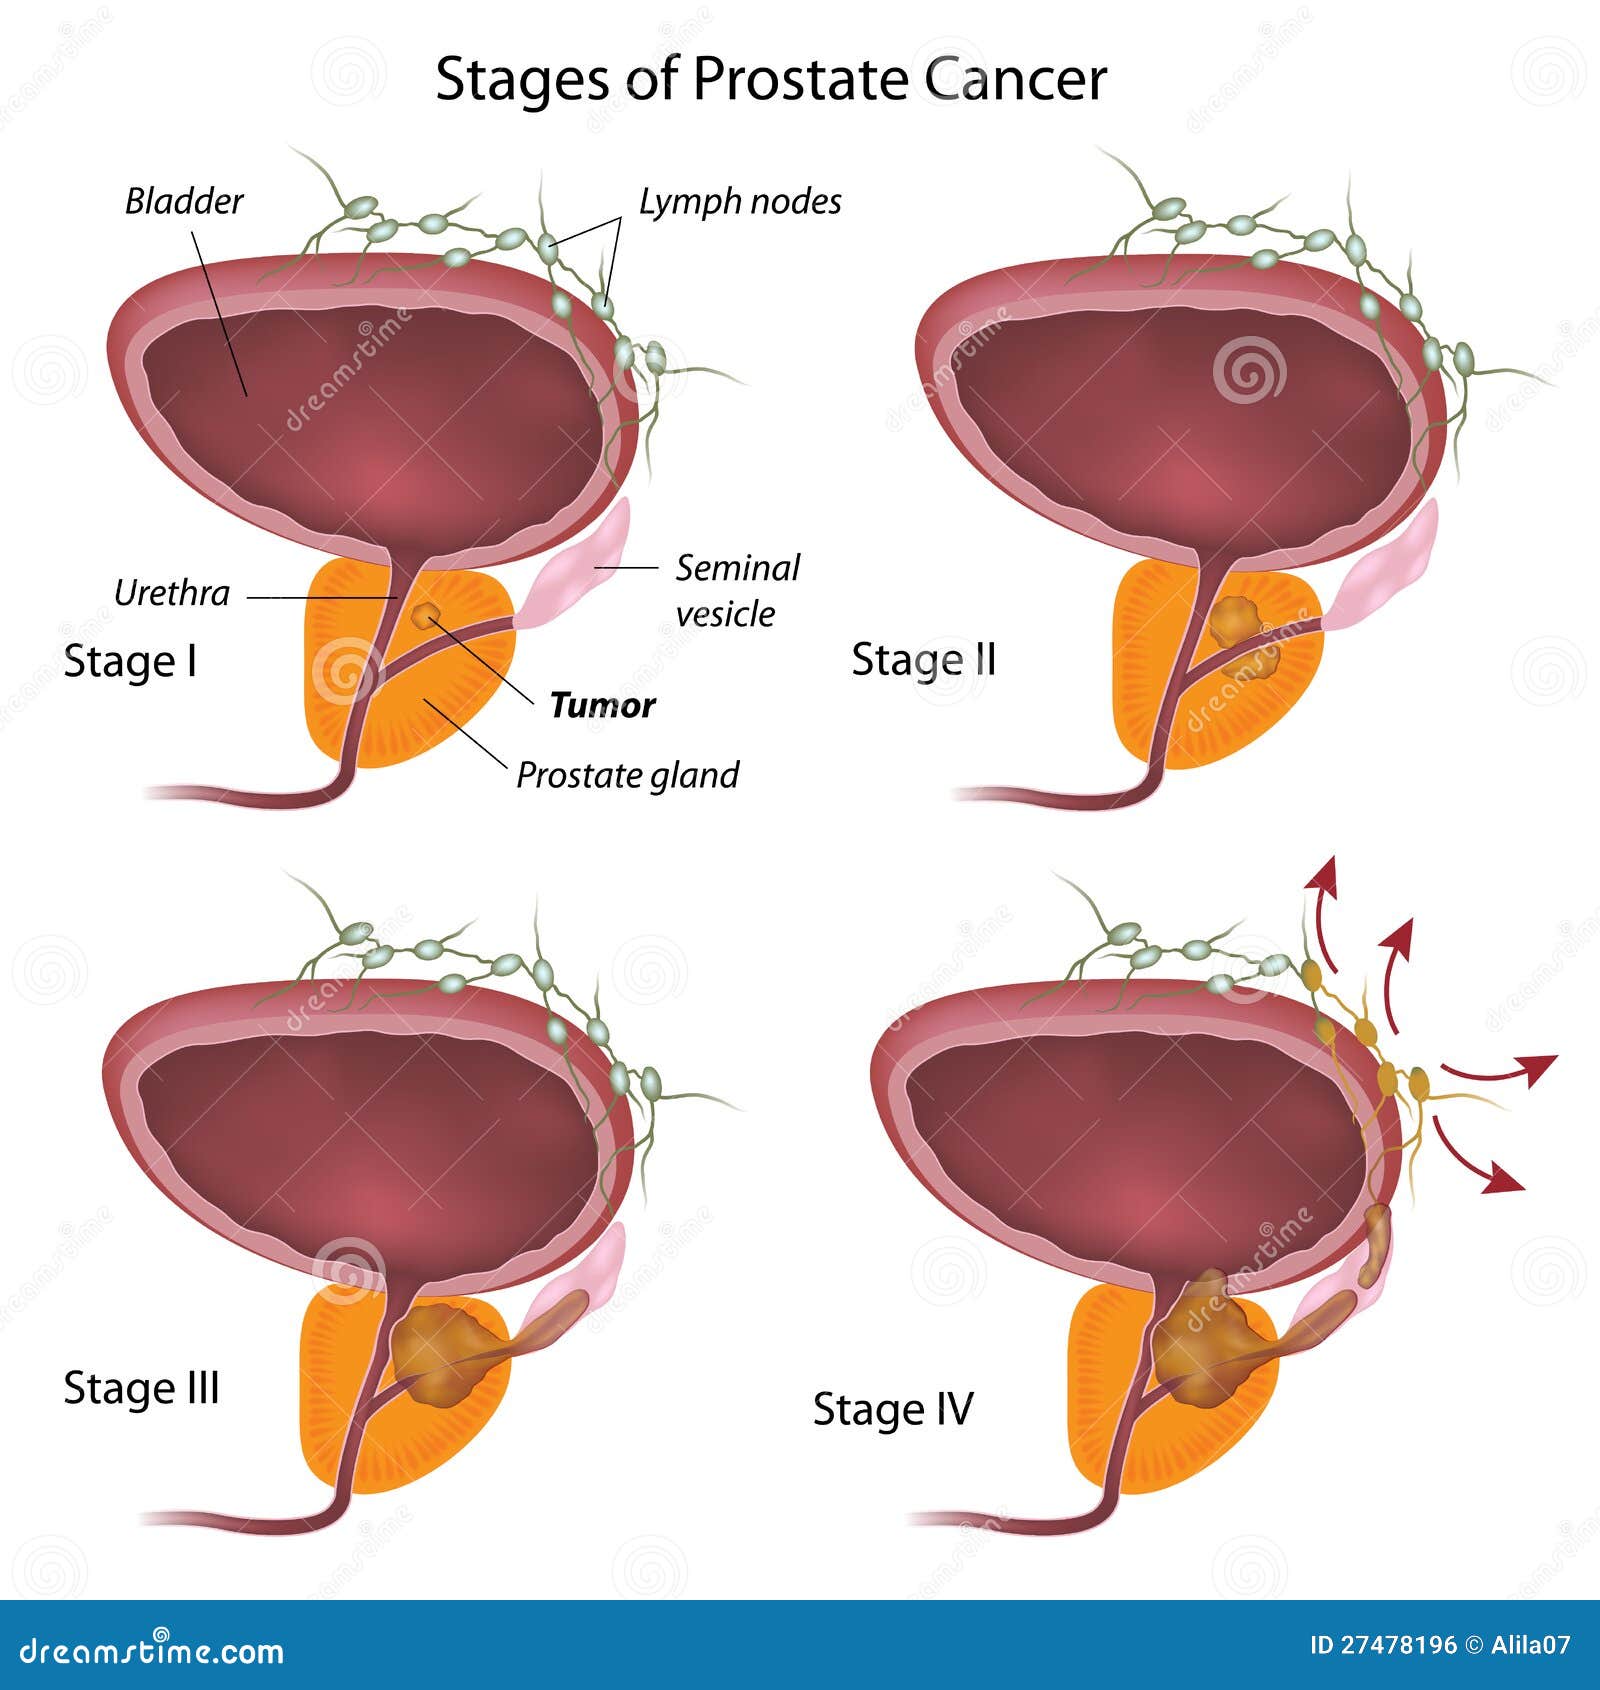 hiperplazie de prostata dex hipertrofia benigna de prostata grado 2